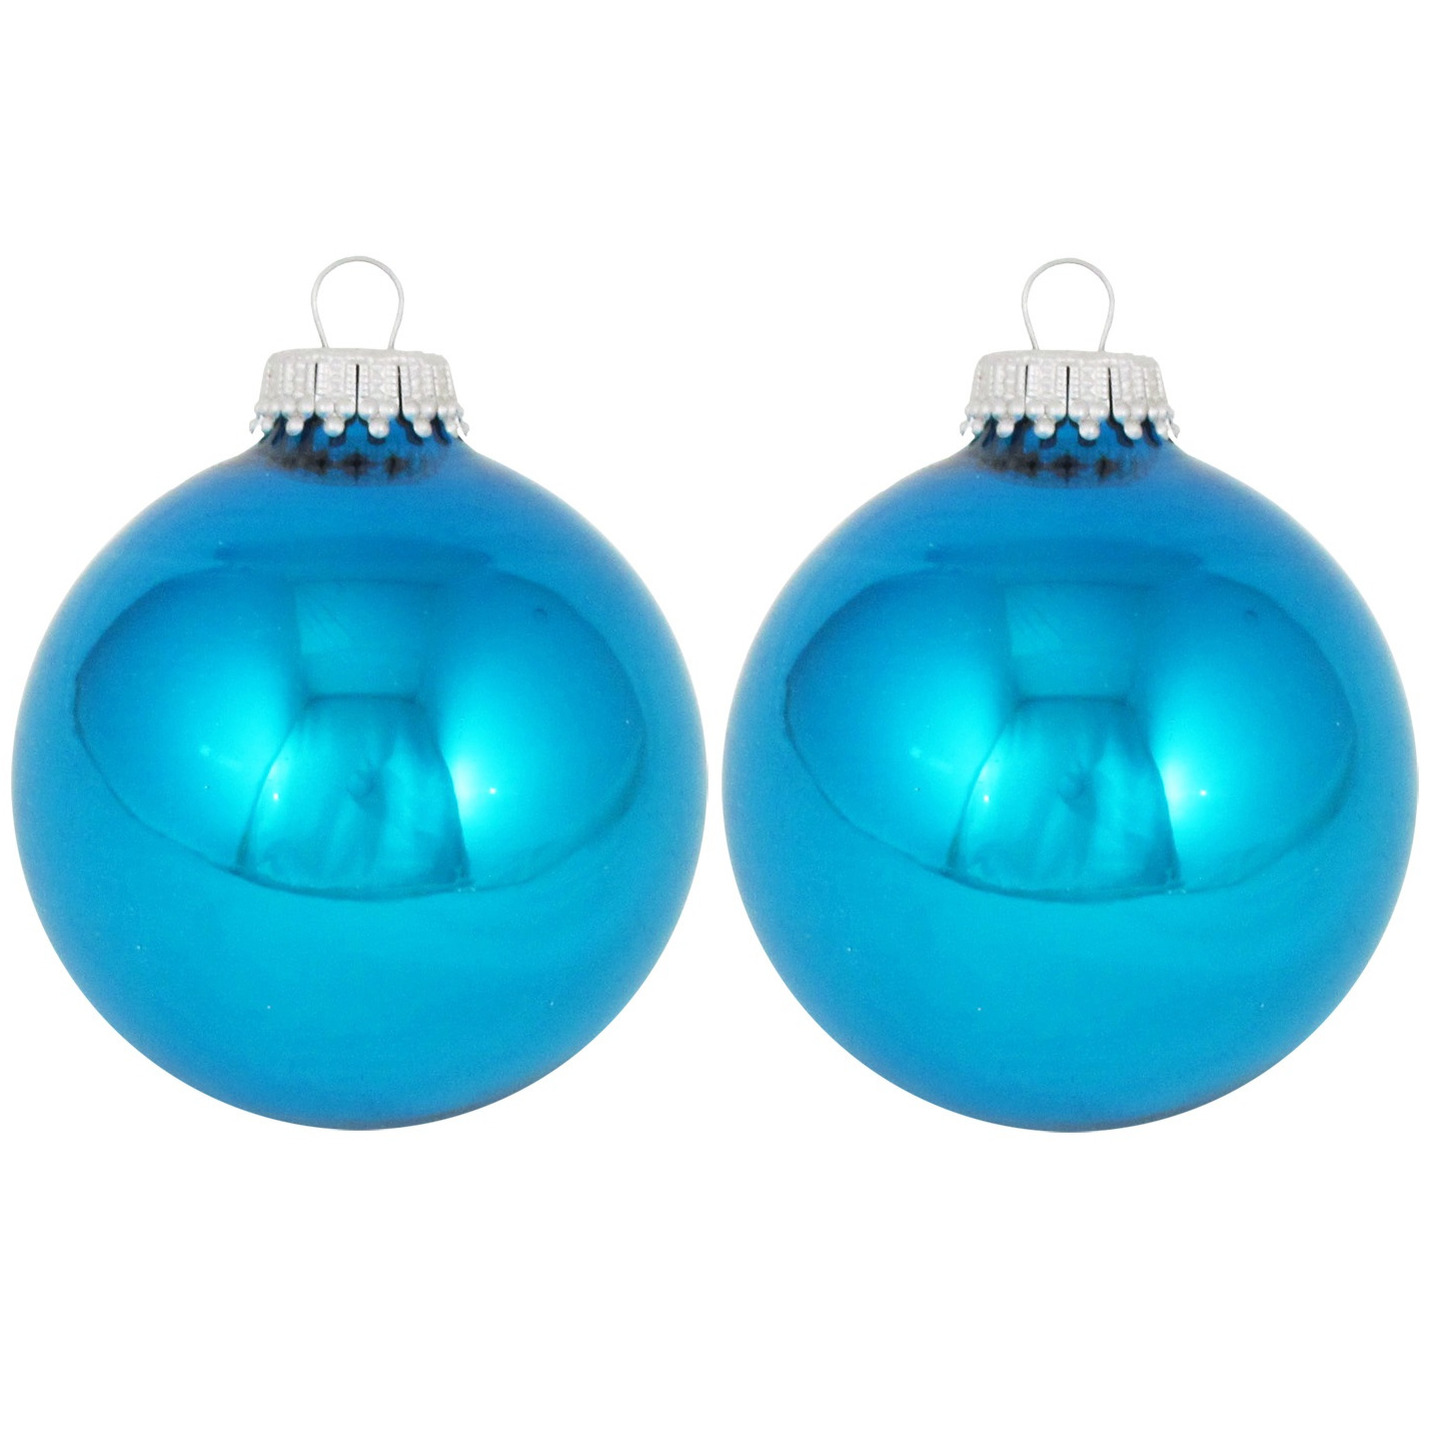 24x Hawaii blauwe glazen kerstballen glans 7 cm kerstboomversiering